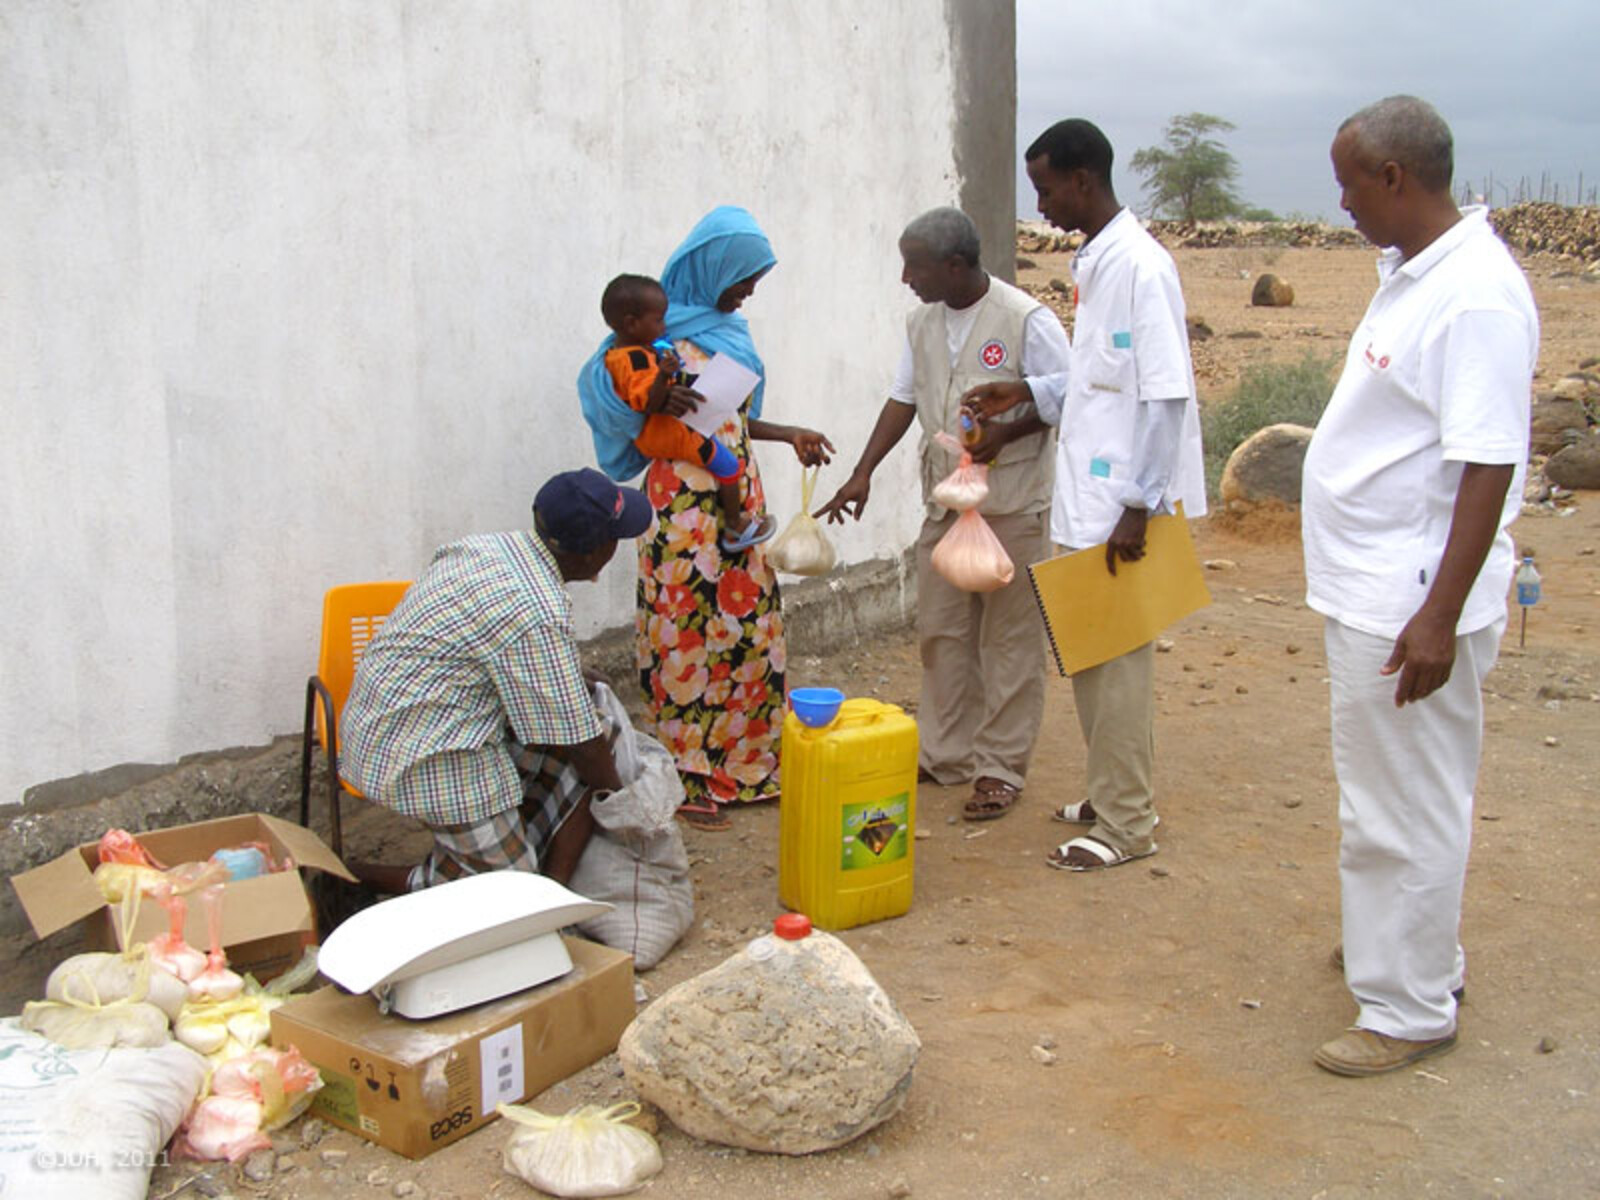 Arbeiterwohlfahrt International kooperiert mit der somalischen Organisation HARDO (Humanitation Action für Relief and Development Organisation), der Johanniter-Unfall-Hilfe und HelpAge. AWO versorgt 500 hungernde Familien in Somalia und sichert so deren Ü